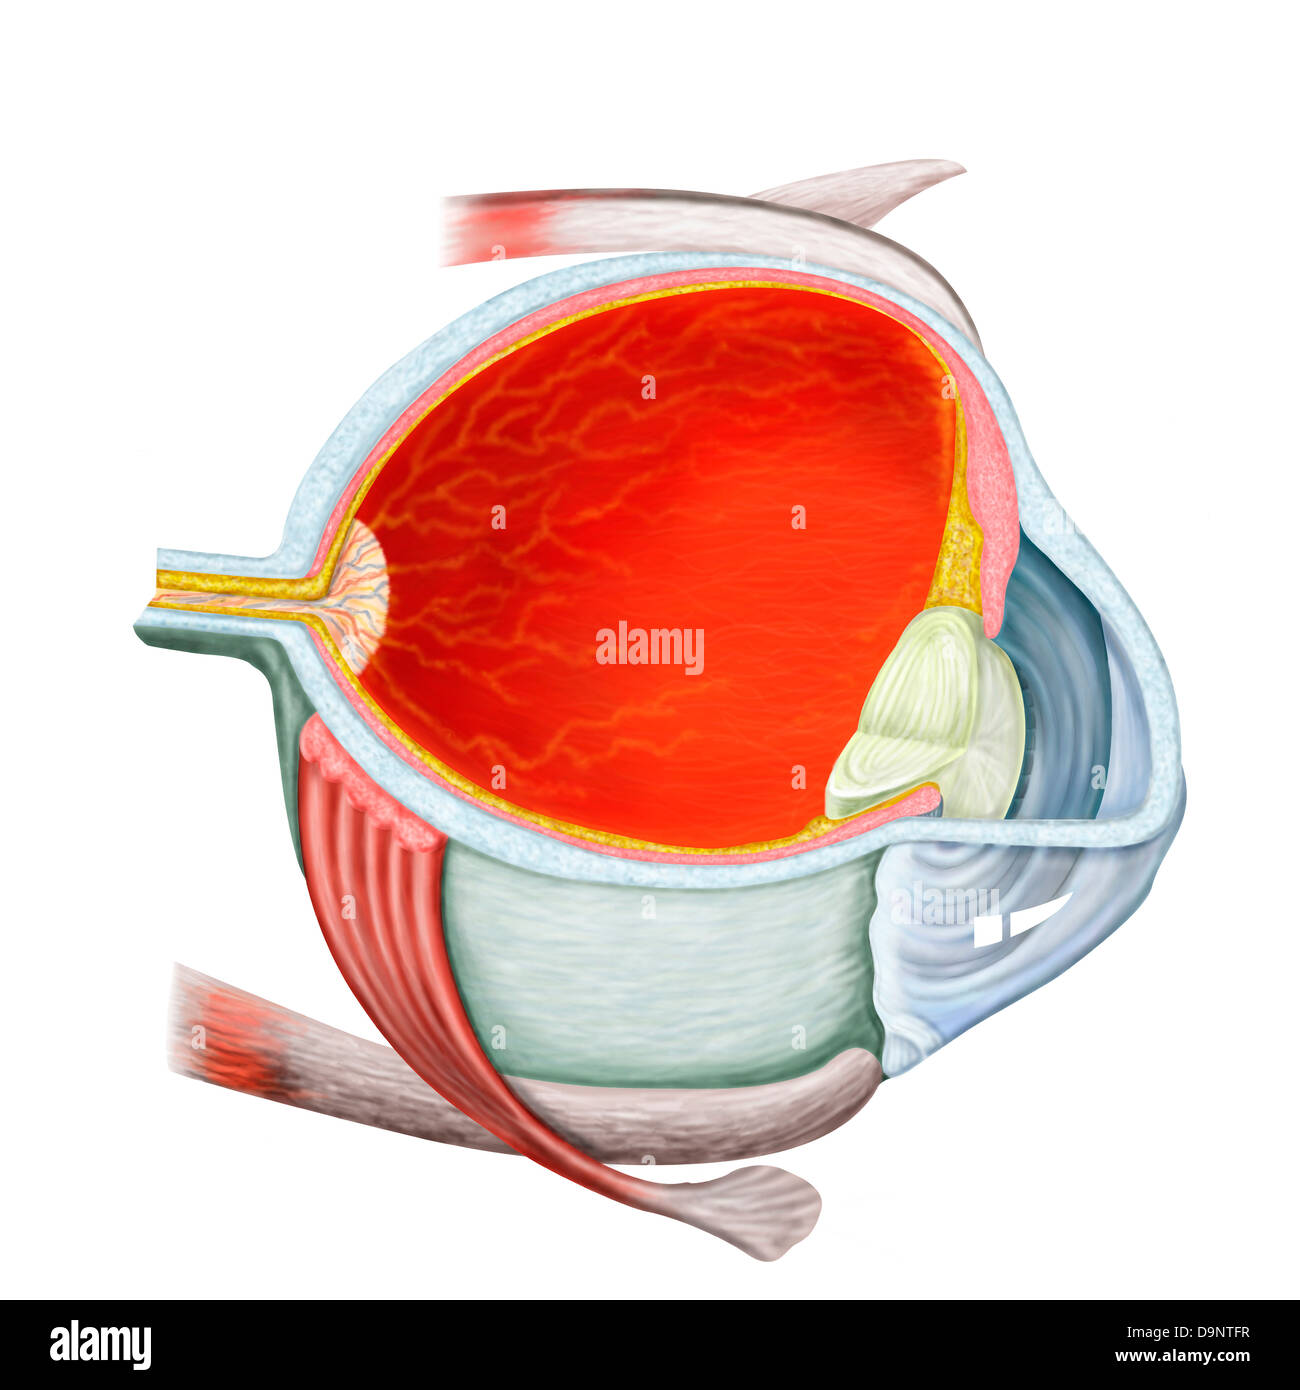 Sezione trasversale dell'occhio umano. Foto Stock